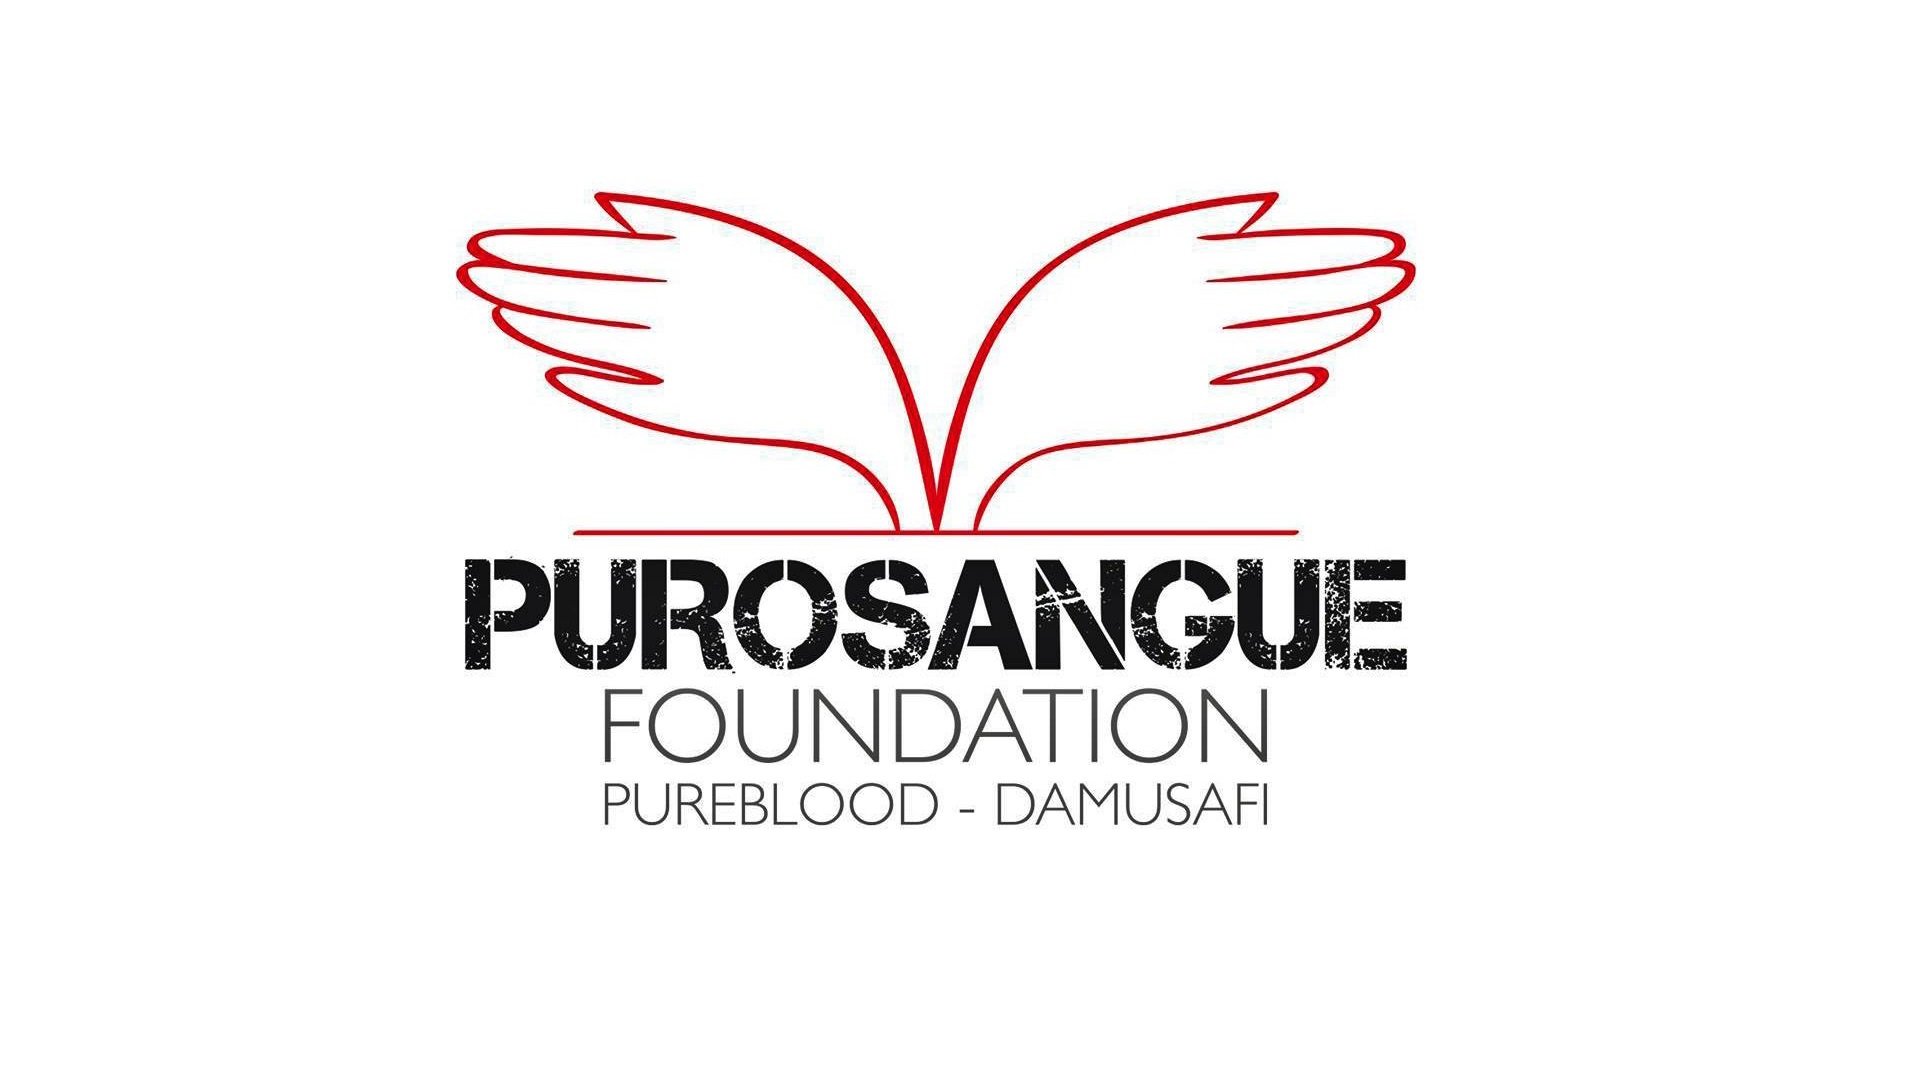 Purosangue foundation